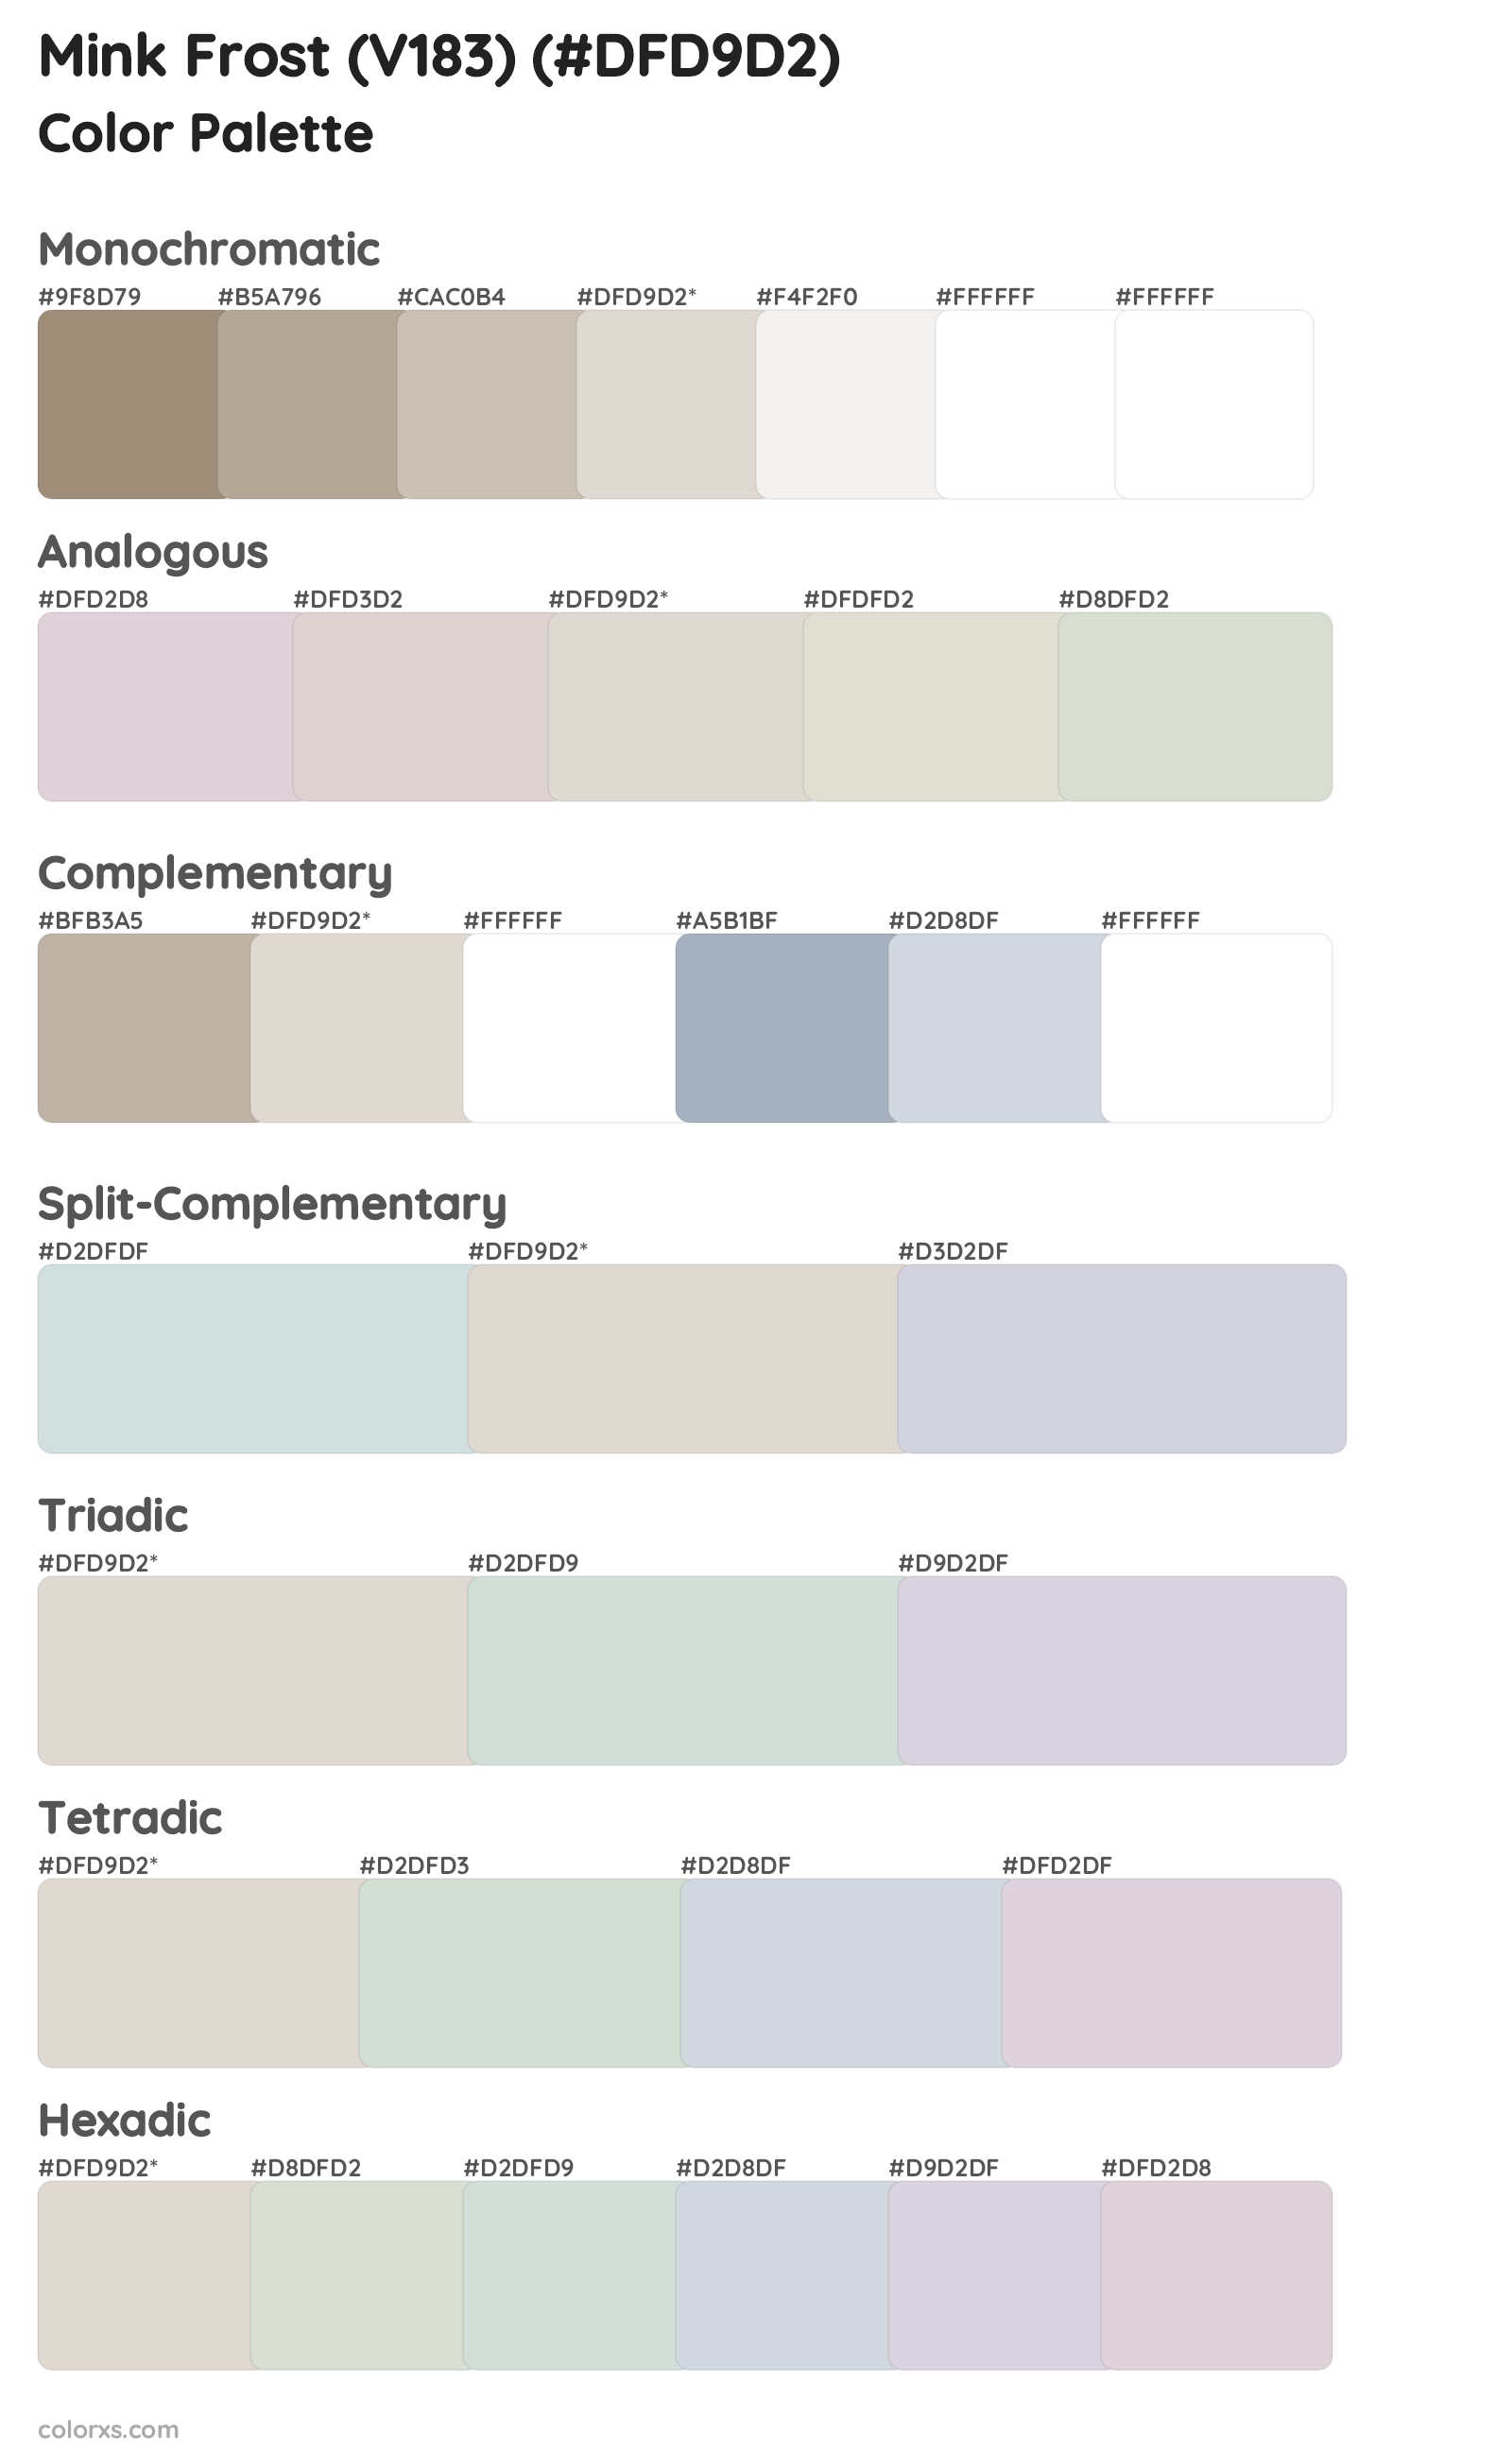 Mink Frost (V183) Color Scheme Palettes